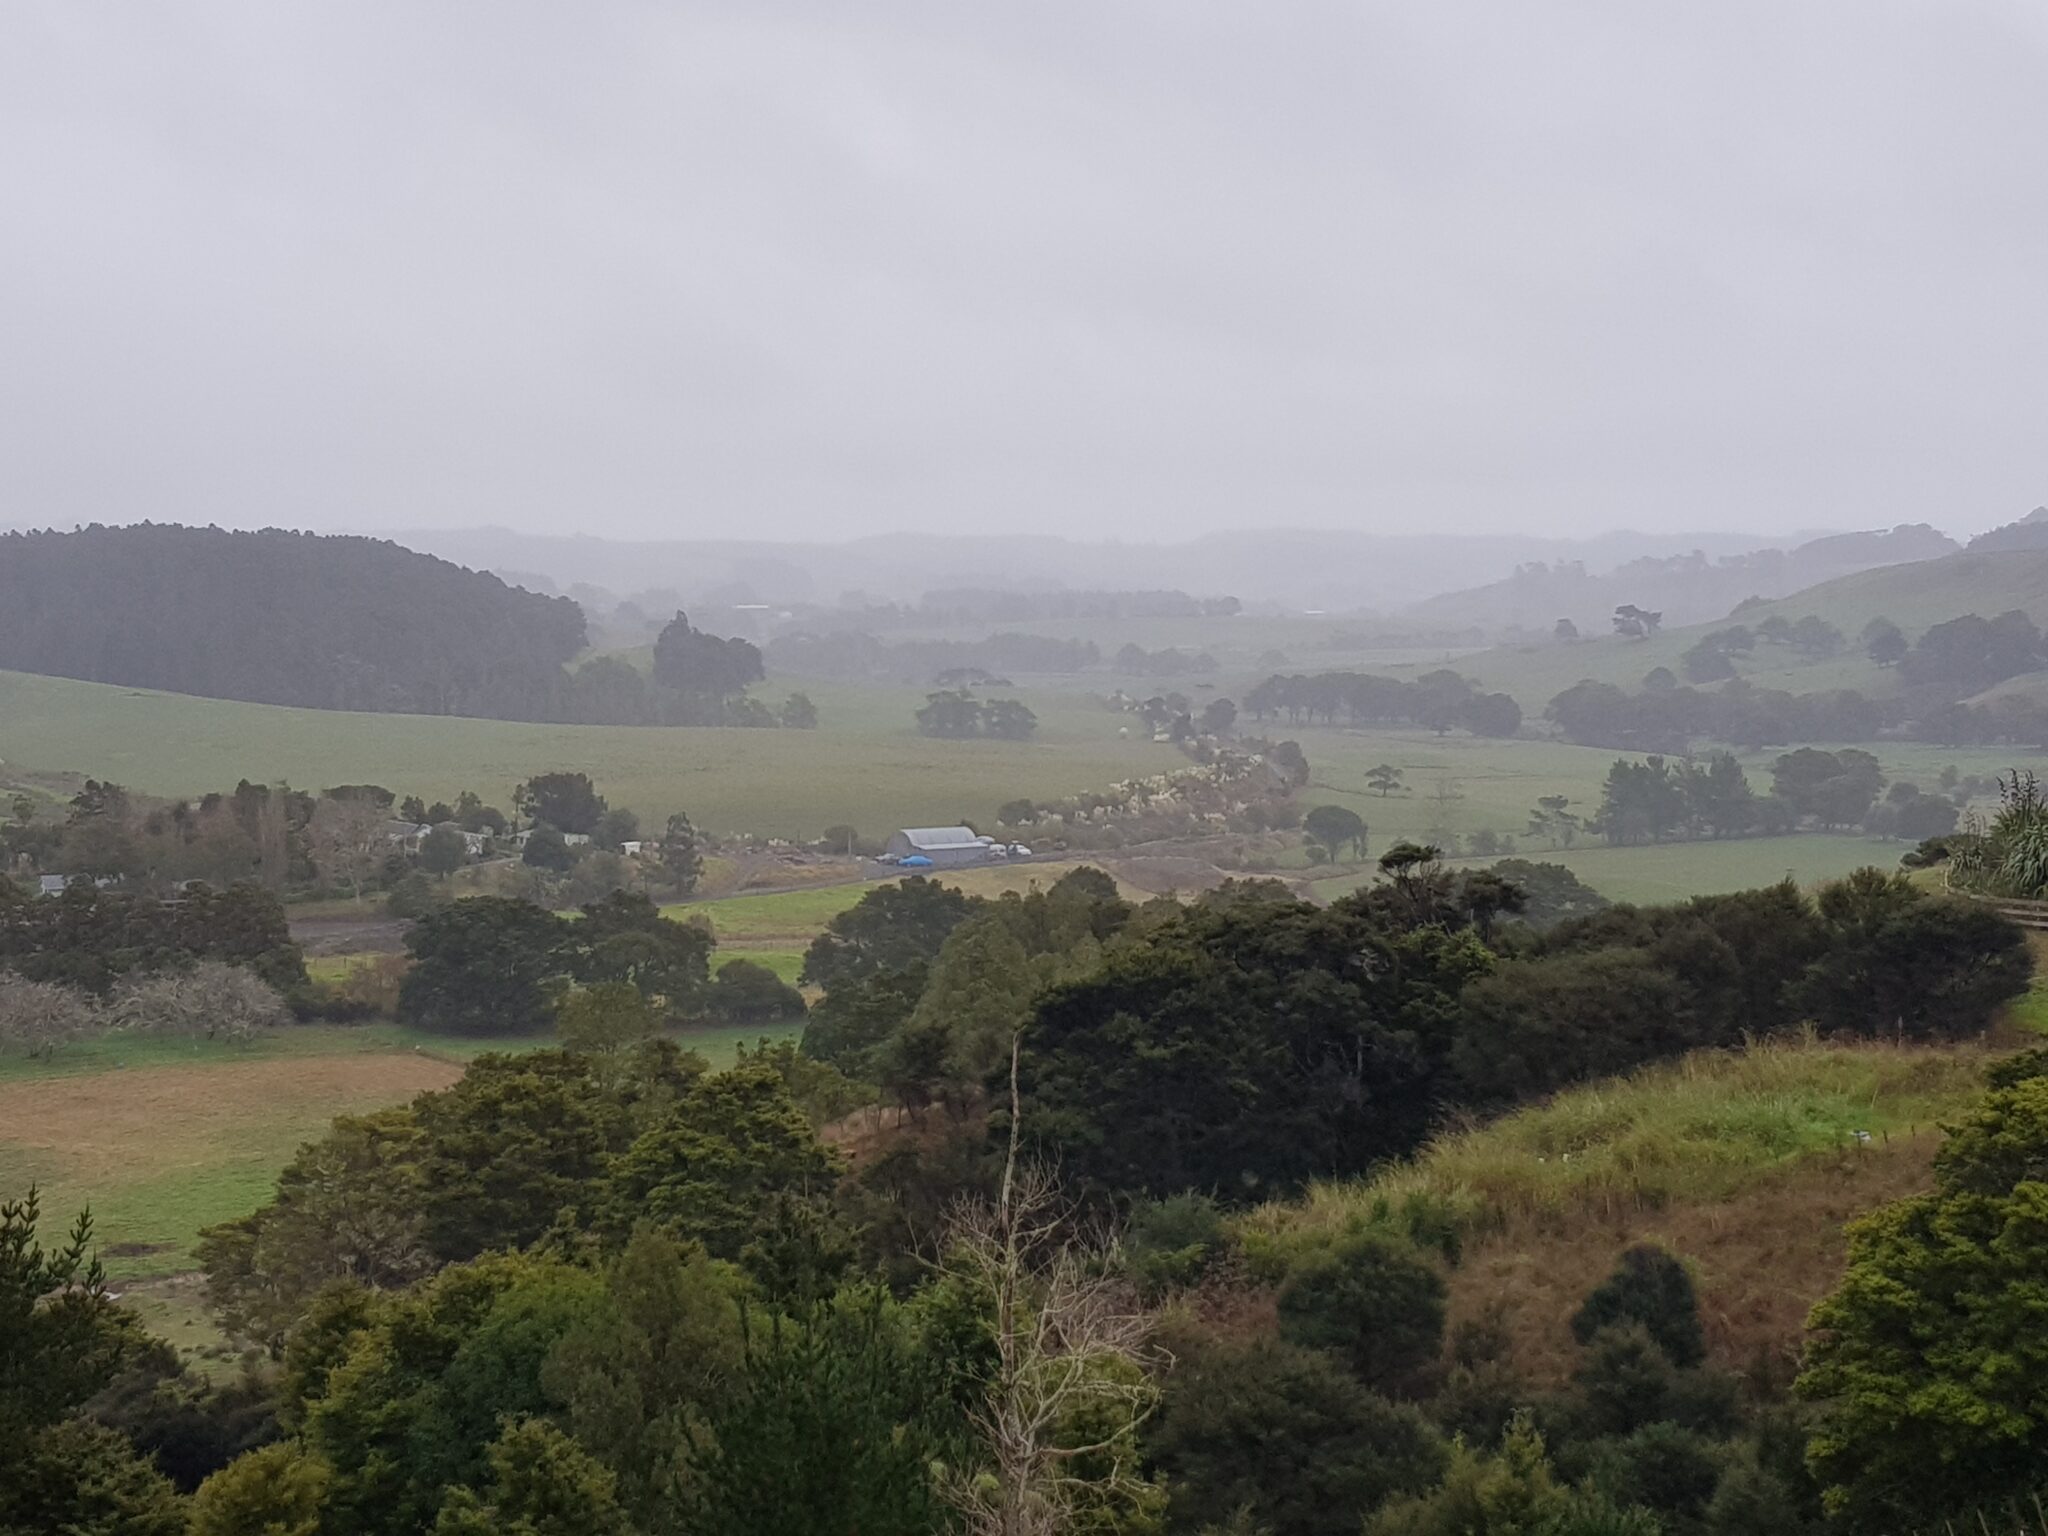 Rainly Kaipara Valley